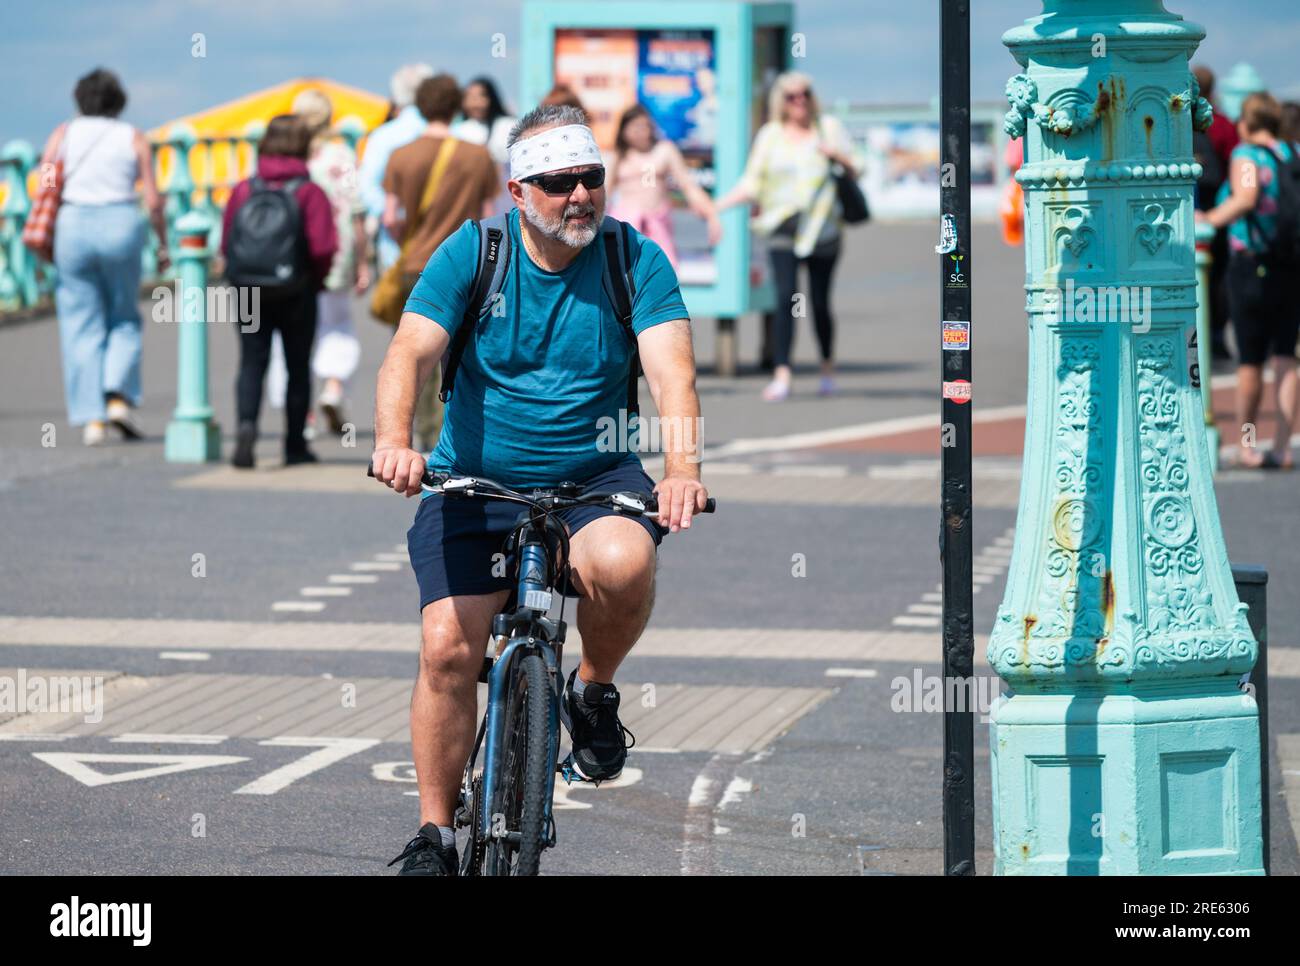 Cycliste faisant du vélo dans une piste cyclable sur la promenade du front de mer à Brighton, Brighton & Hove, East Sussex, Angleterre, Royaume-Uni. Banque D'Images